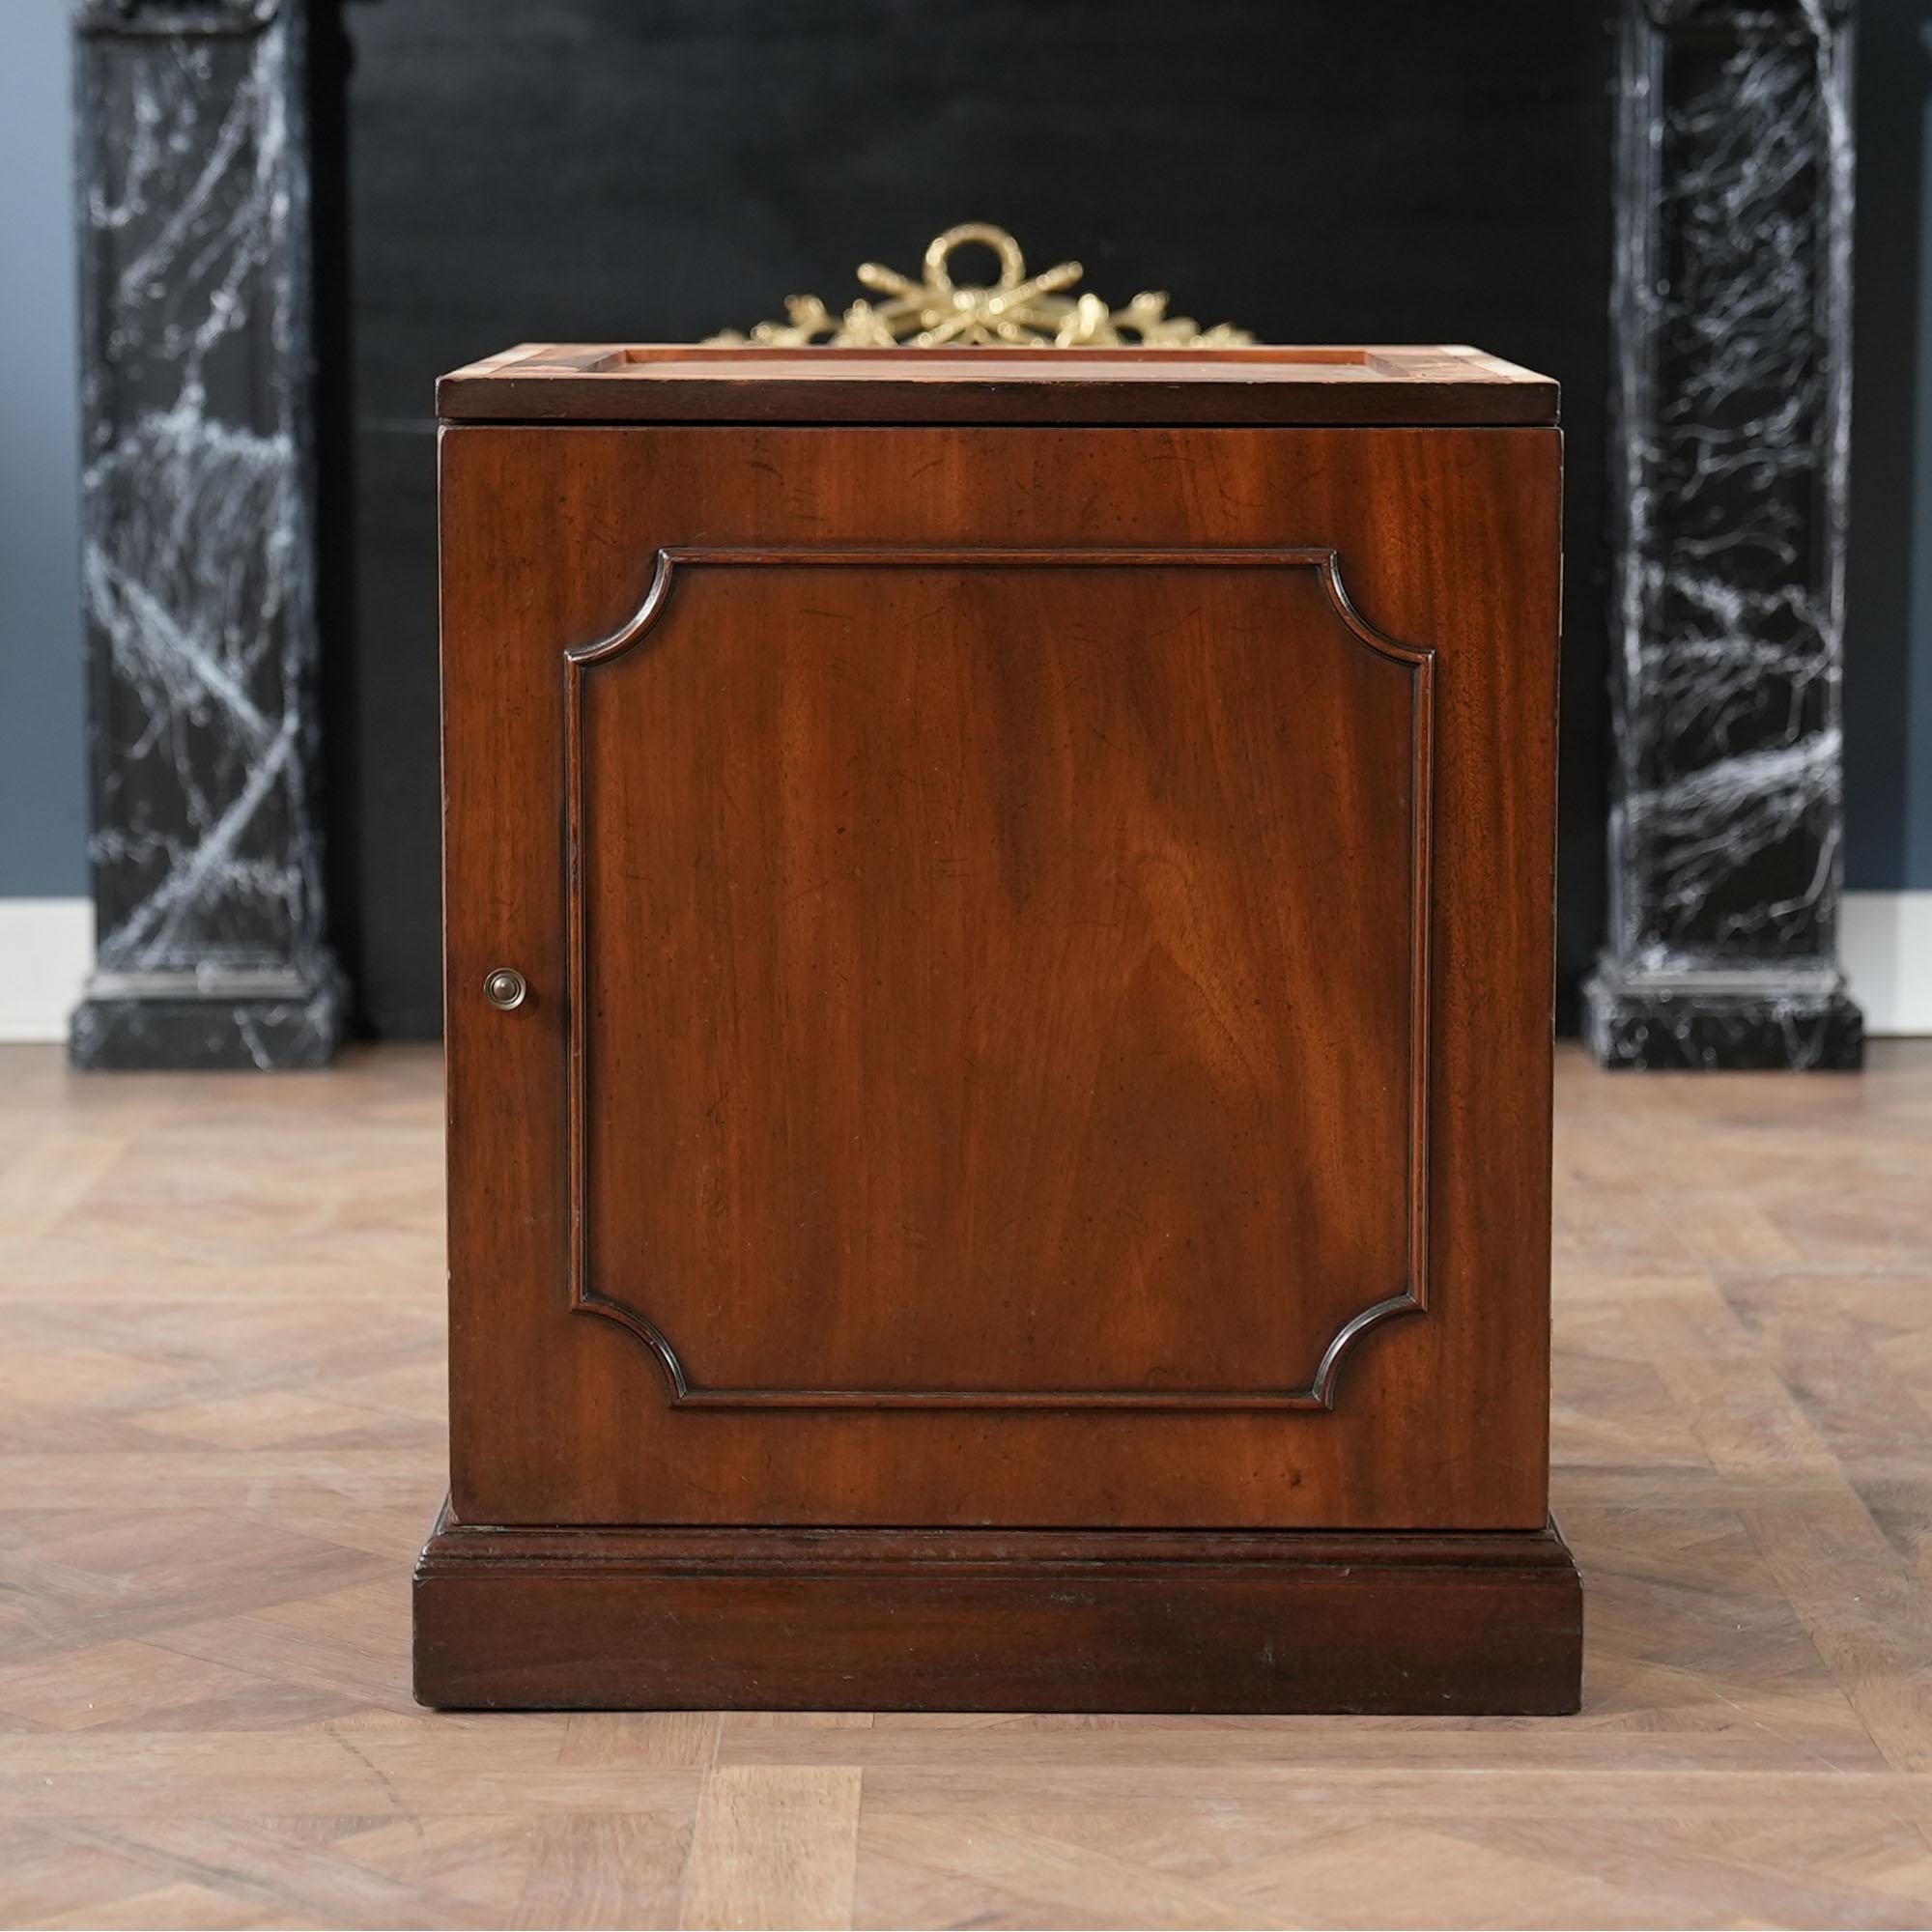 Cette table à tambour Vintage By Kittinger est un exemple de la plus haute qualité de production de meubles américains. Du dessus en cuir véritable magnifiquement décoré et gaufré à l'armoire de base robuste, tout ici fonctionne ensemble pour créer